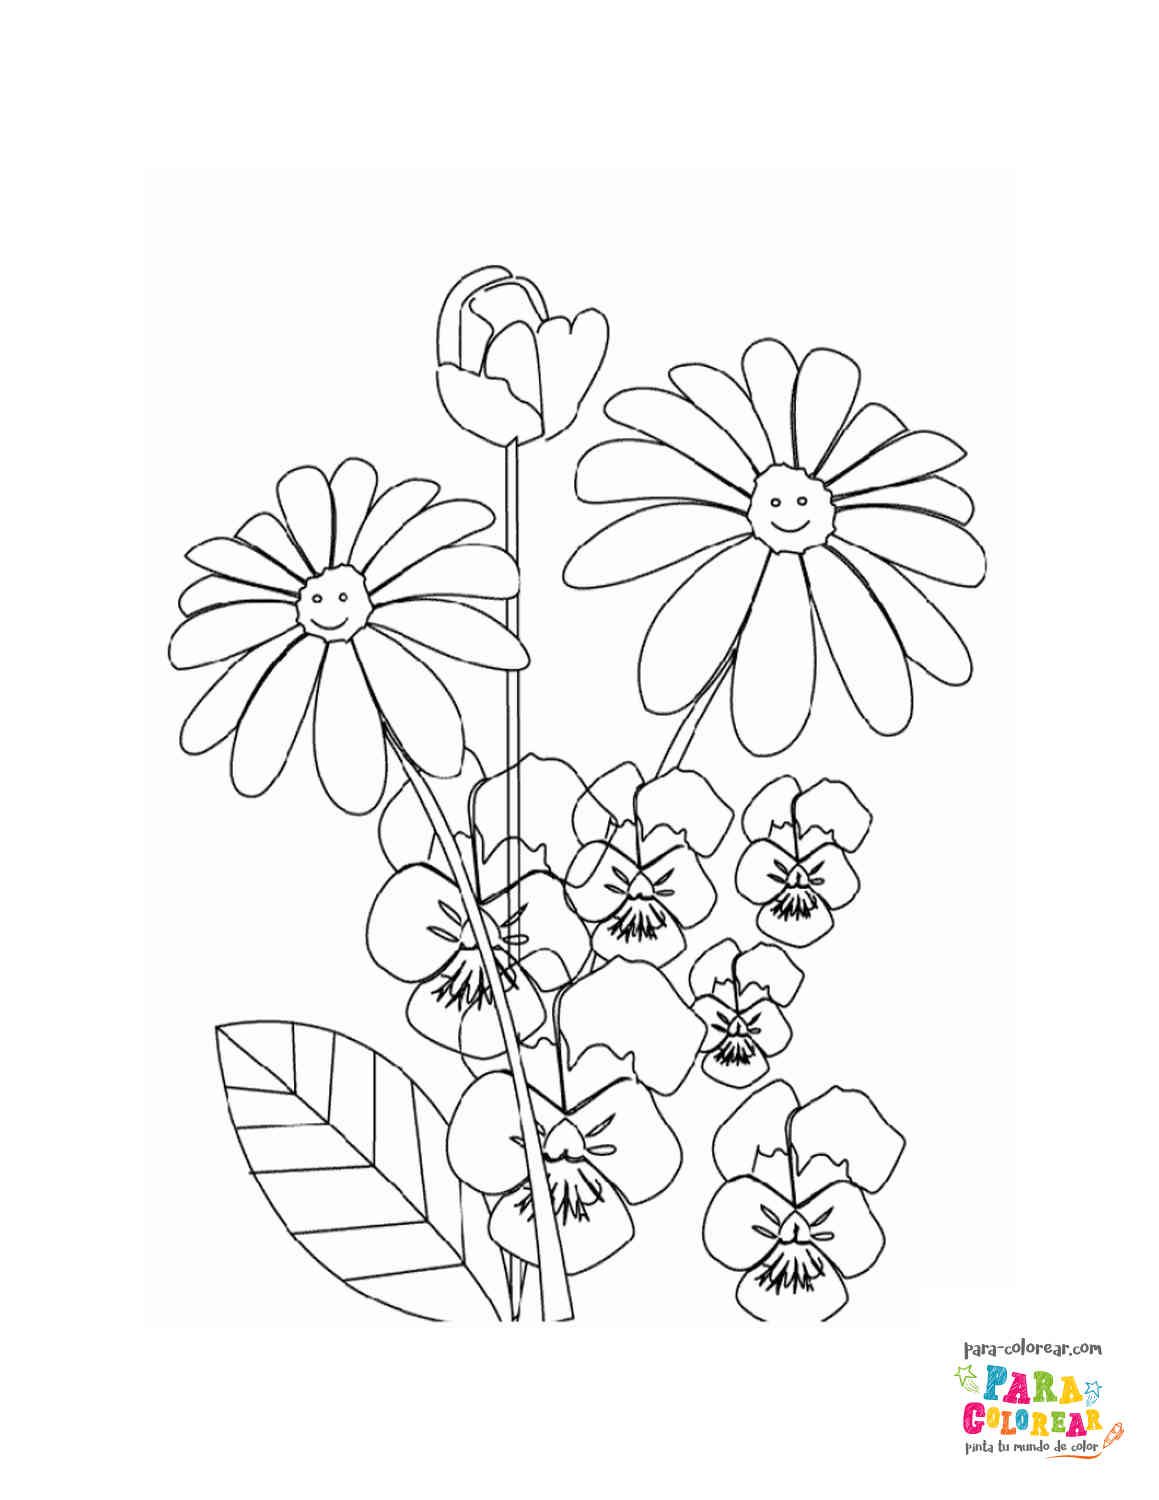 Dibujo de flores con caritas para colorear 